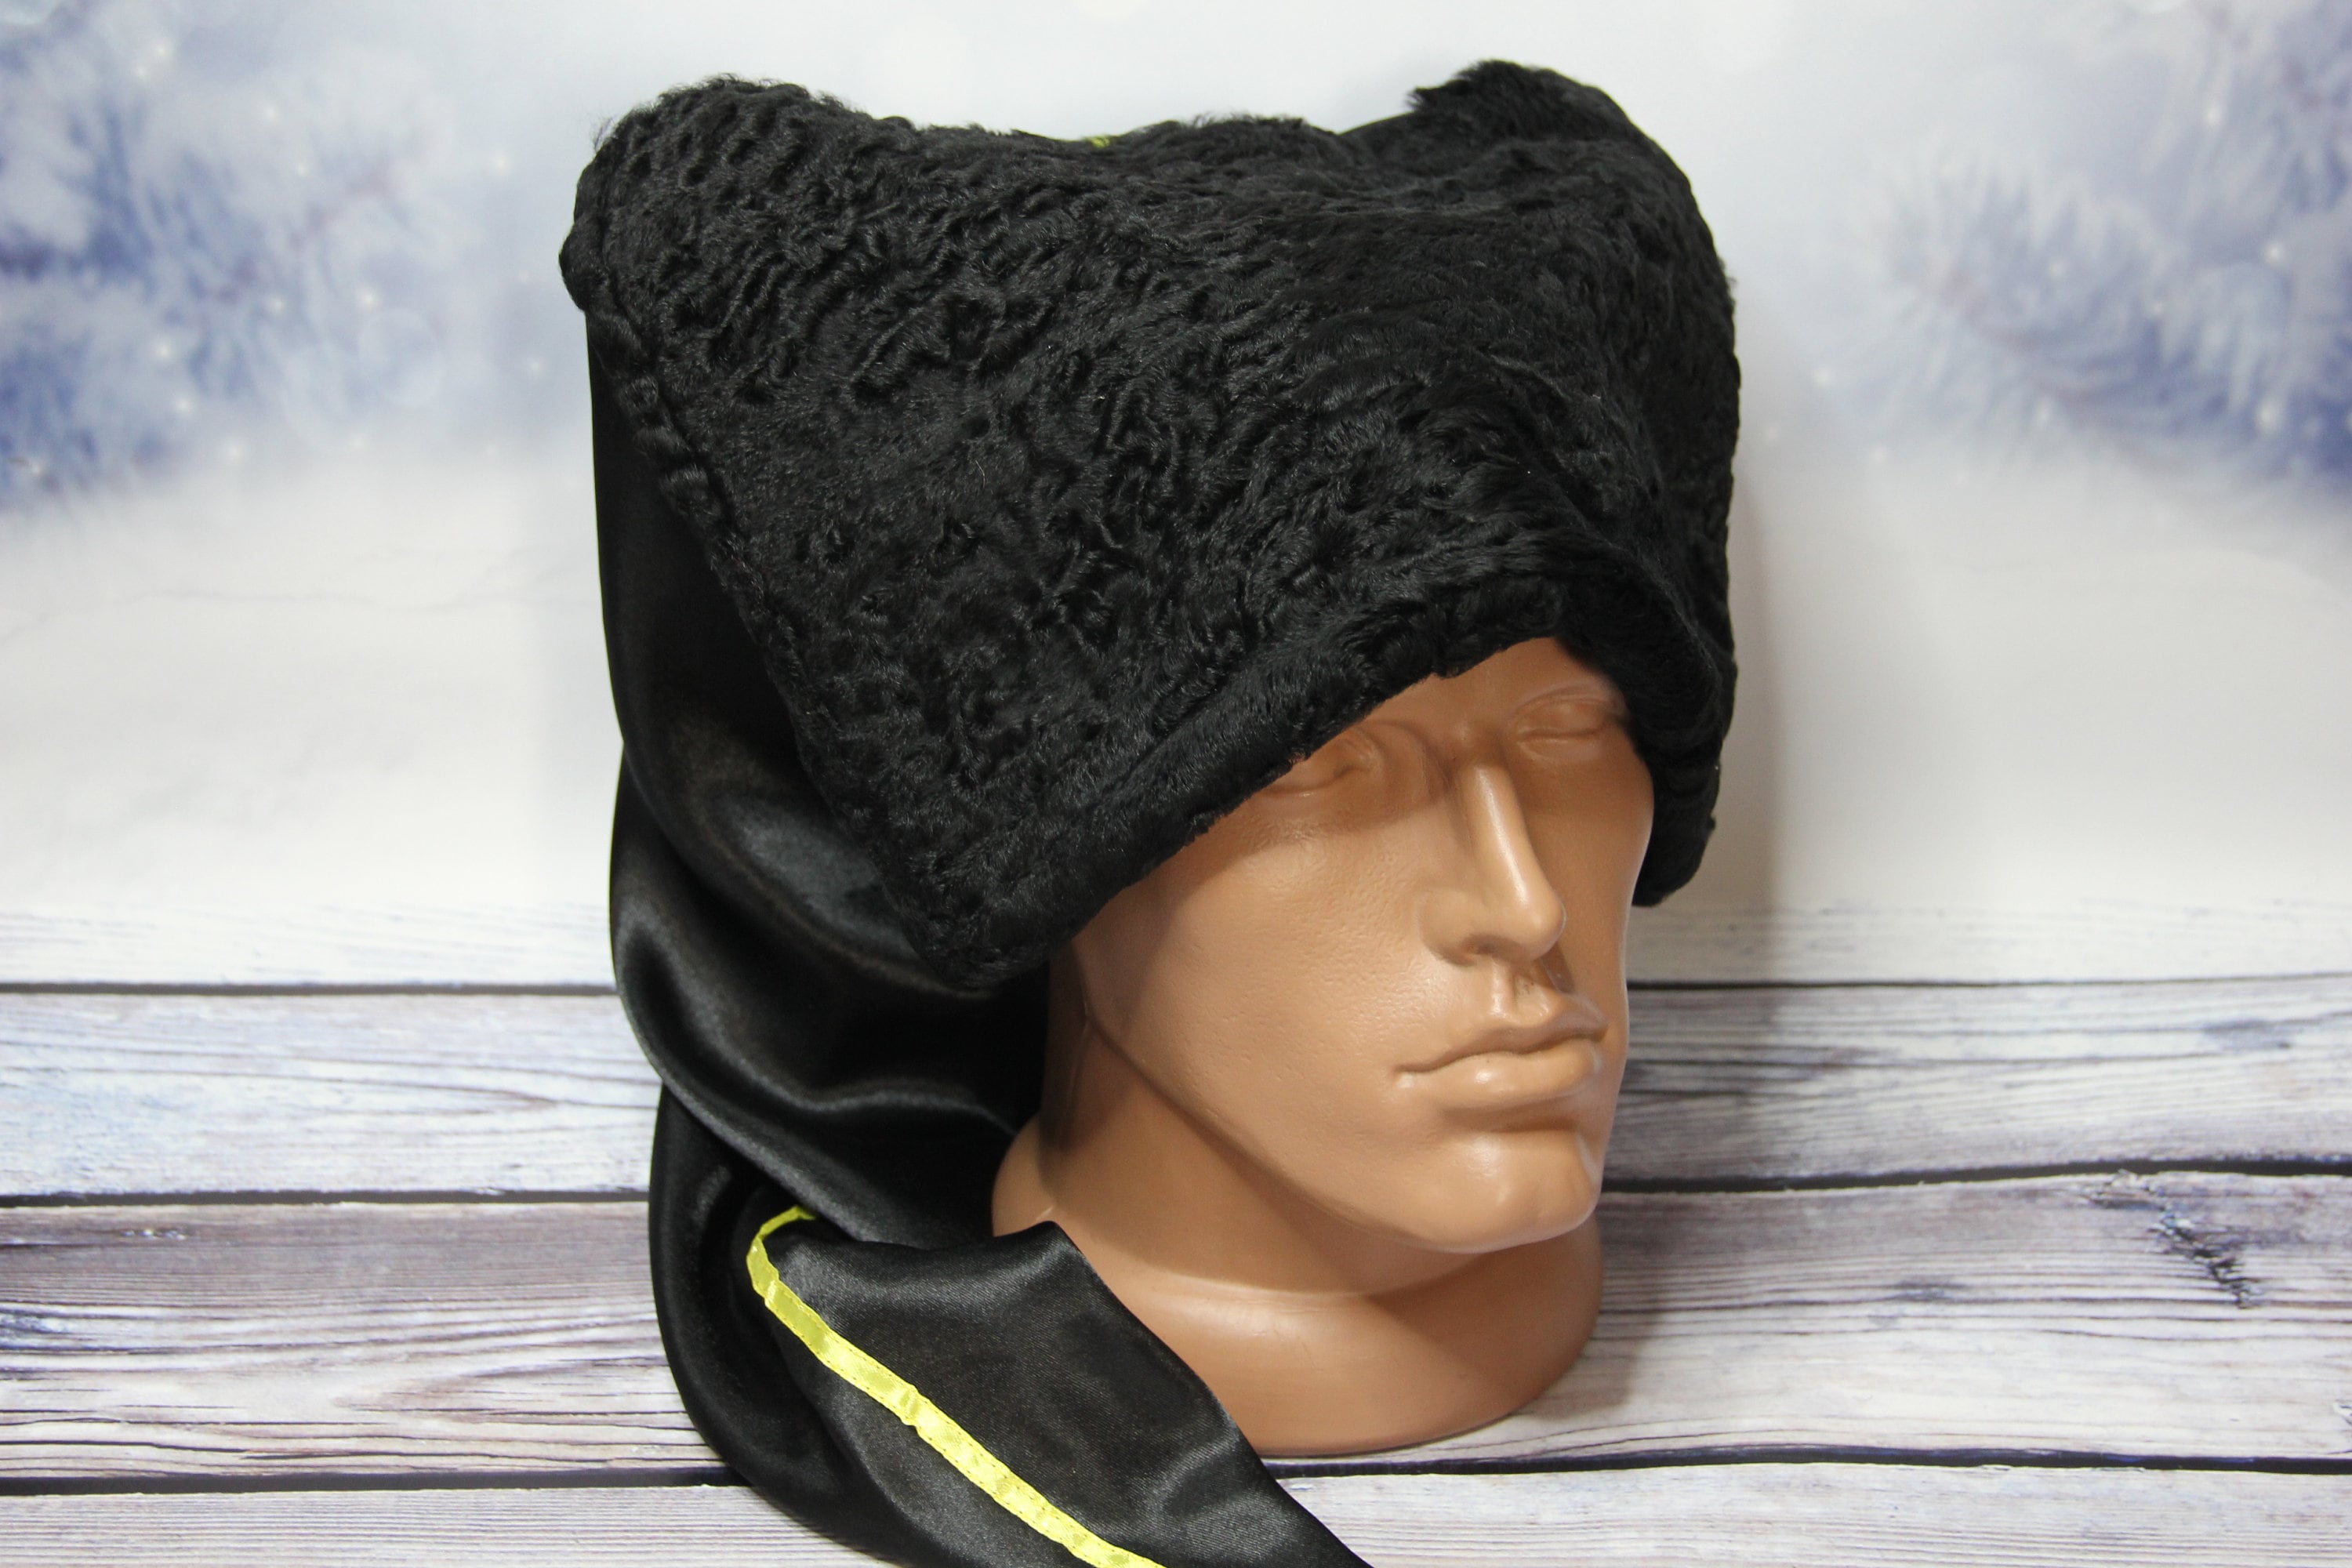 Kunstfell Trimmed Hut für Frauen, stilvolle russische Kosakenmütze mit  Fleece für Reisen Acsergery Geschenk